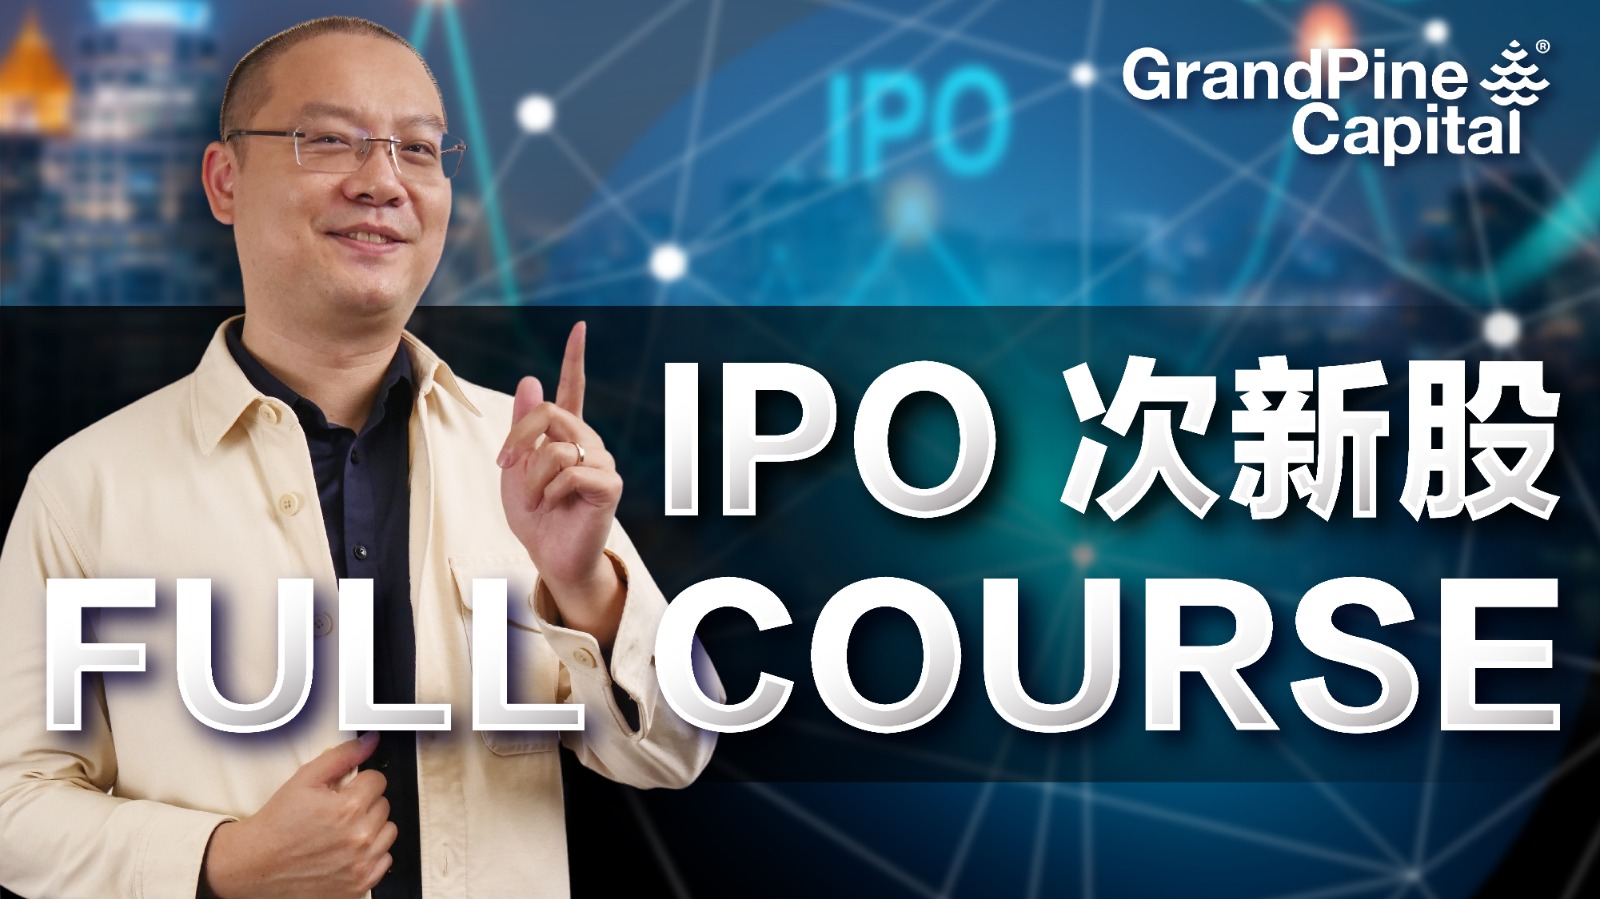 IPO次新股 Full Course